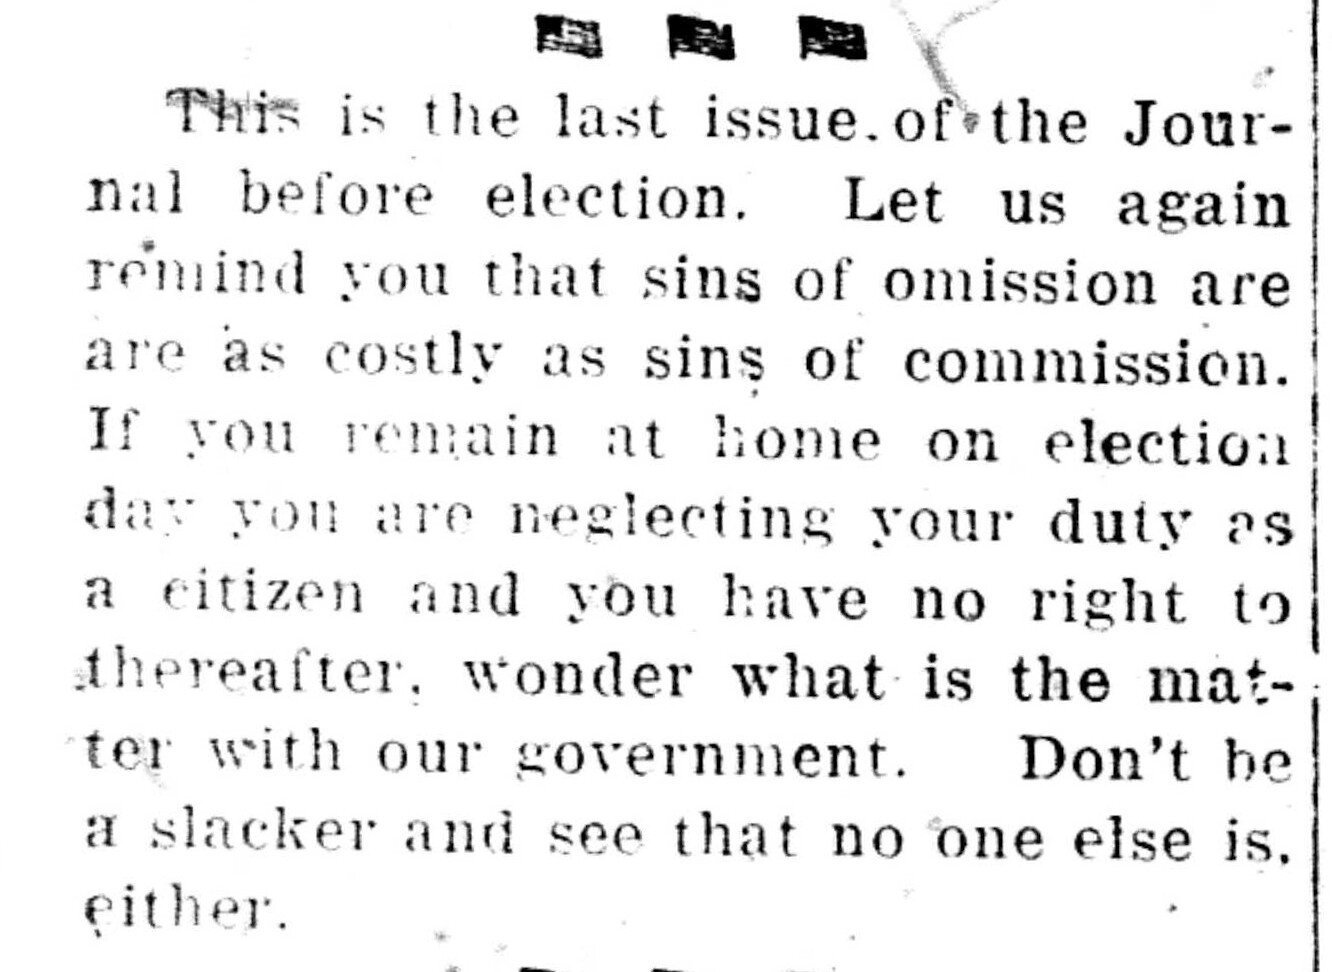 Buffalo Journal, August 28, 1920